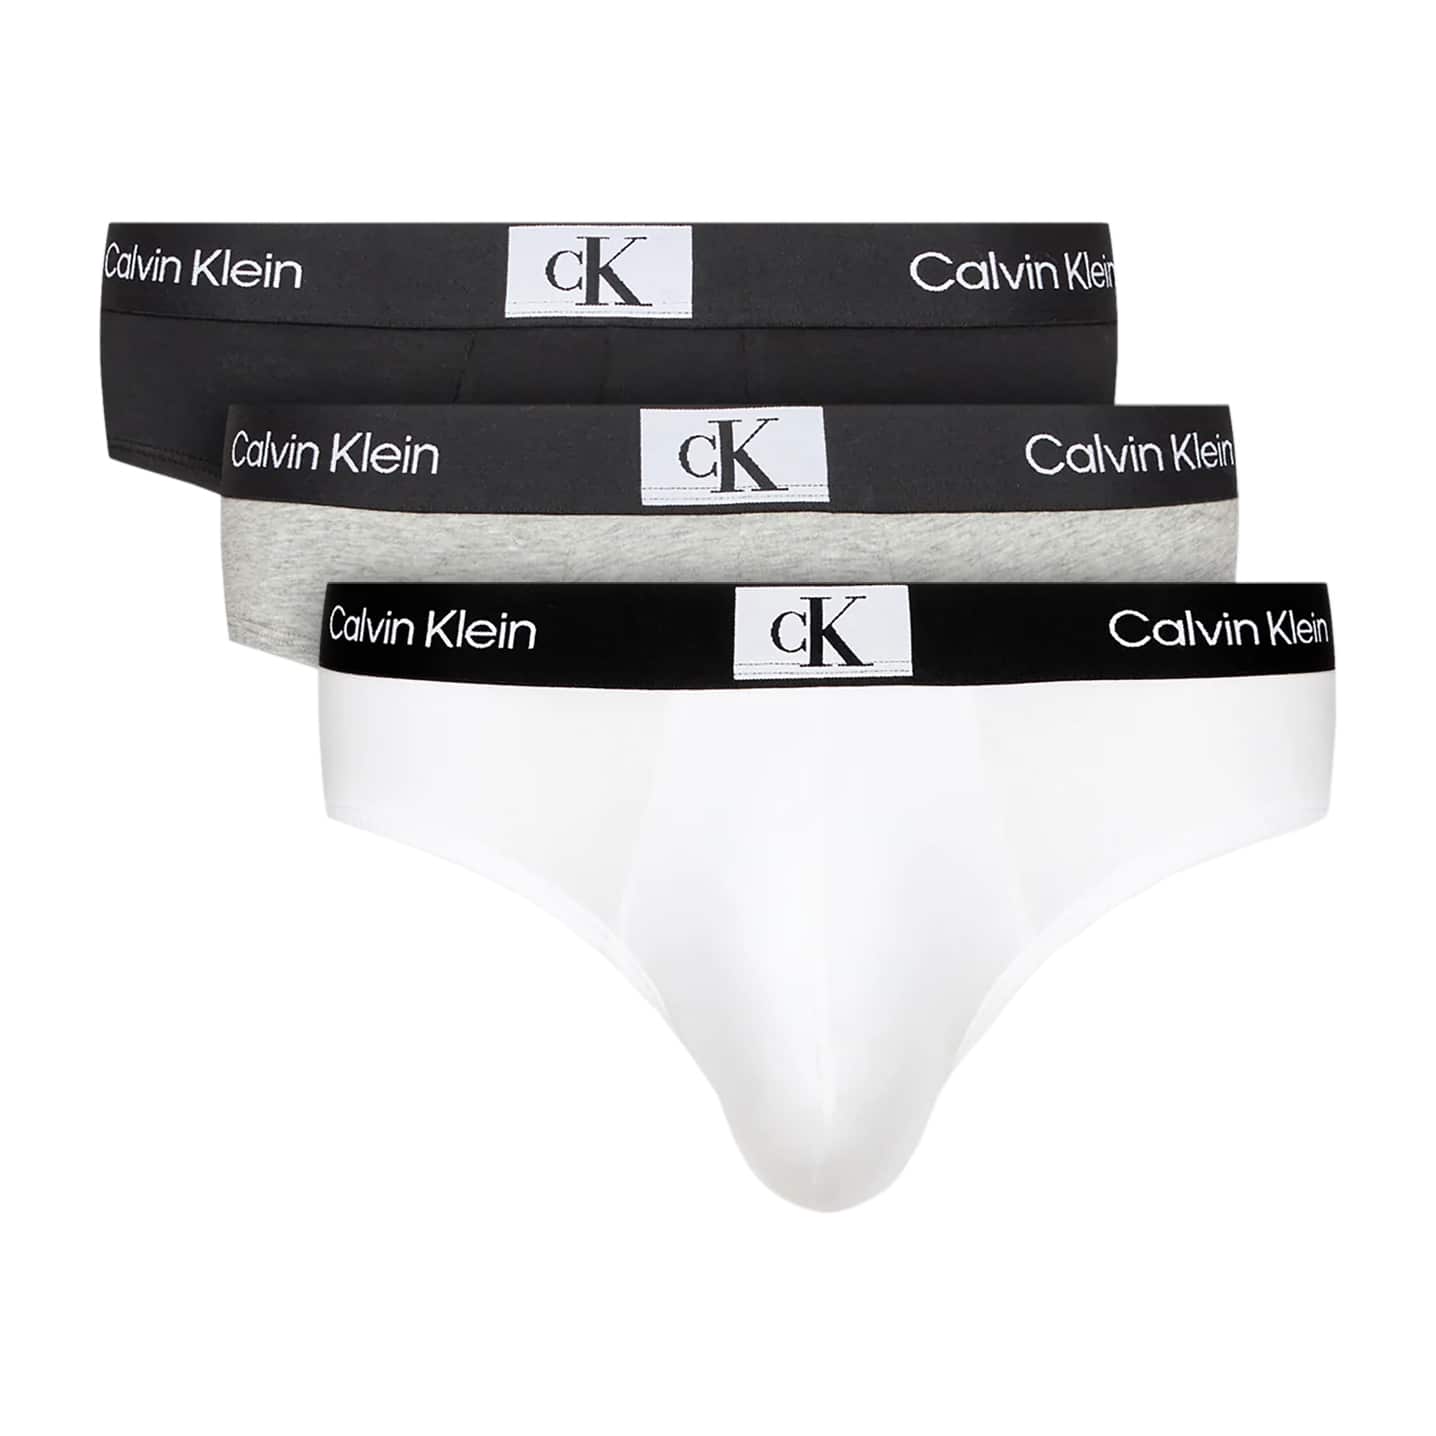 Calvin Klein High-waisted brief CK96 in black